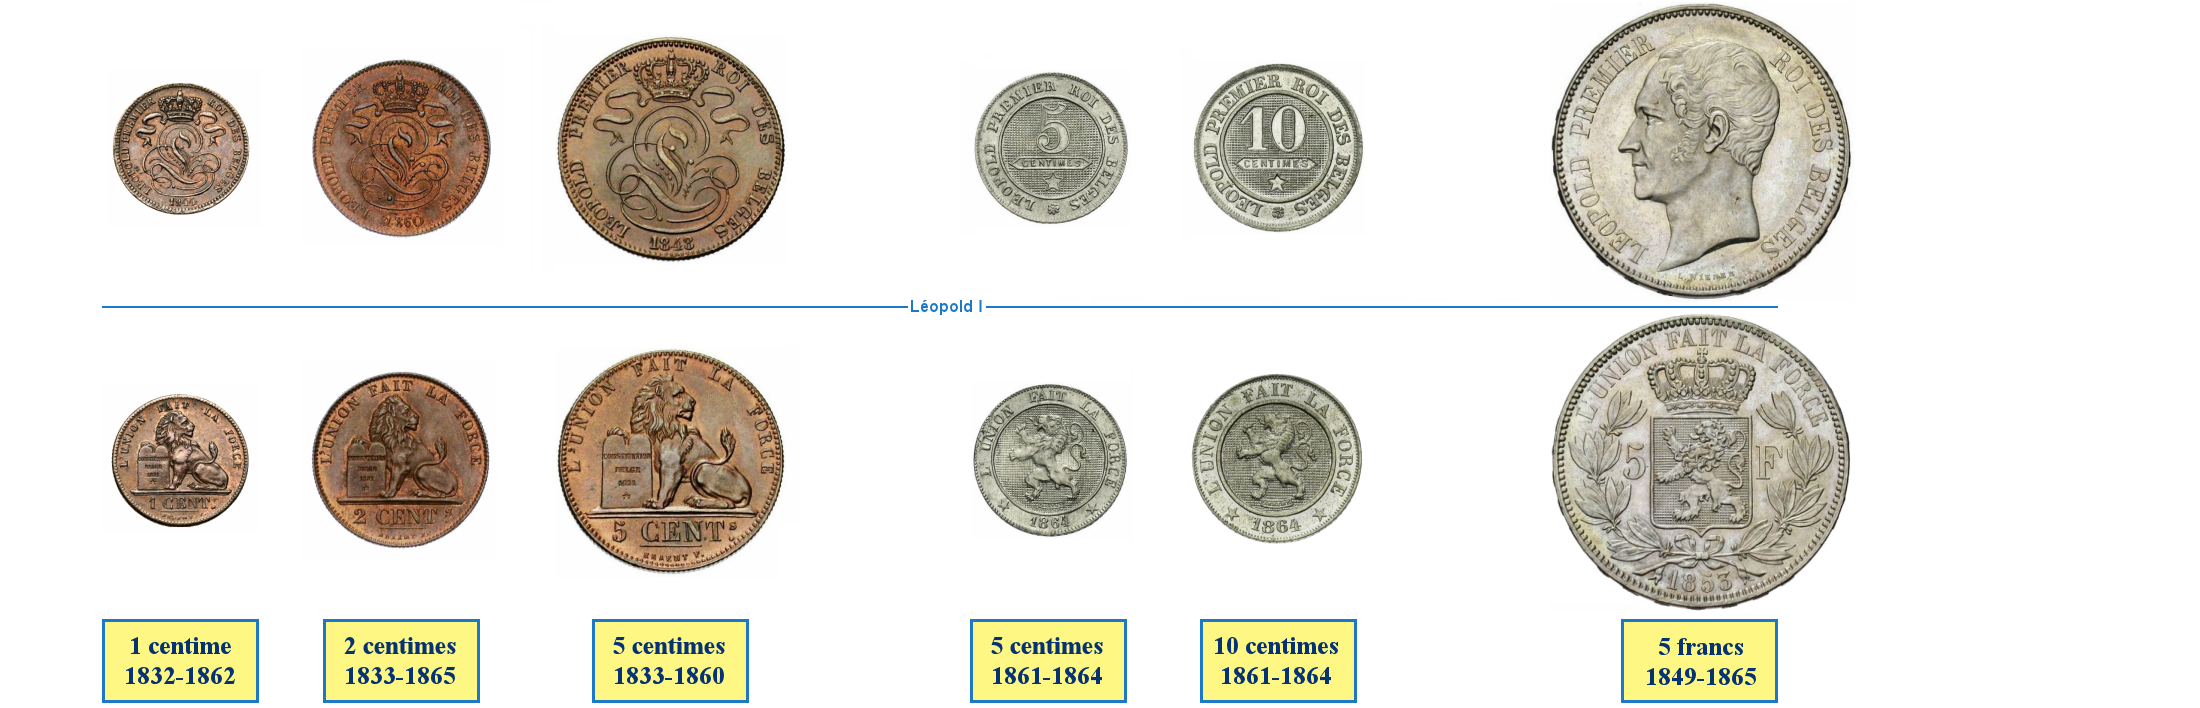 Photos de pièces de monnaies du Royaume de Belgique sous le règne de Léopold Ier